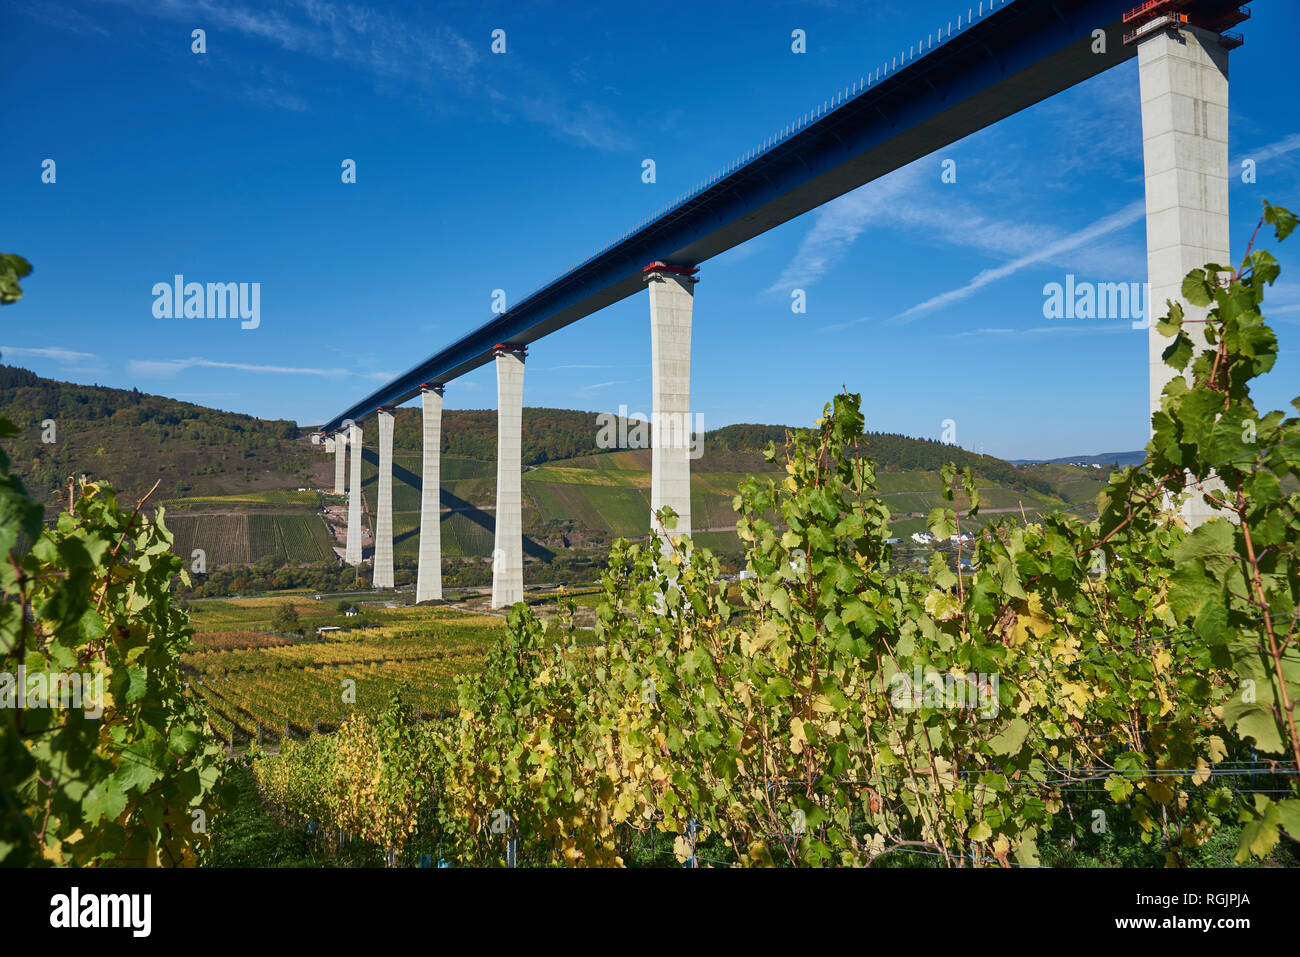 Germany, Rhineland-Palatinate, Bernkastel-Wittlich, Zeltingen-Rachtig, Uerzig, Moselle river, High Moselle Bridge Stock Photo